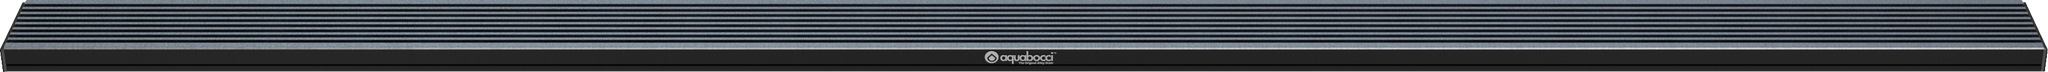 A30 Shower Kit | 2400mm / 94 Inch Length - Aquabocci Ltd